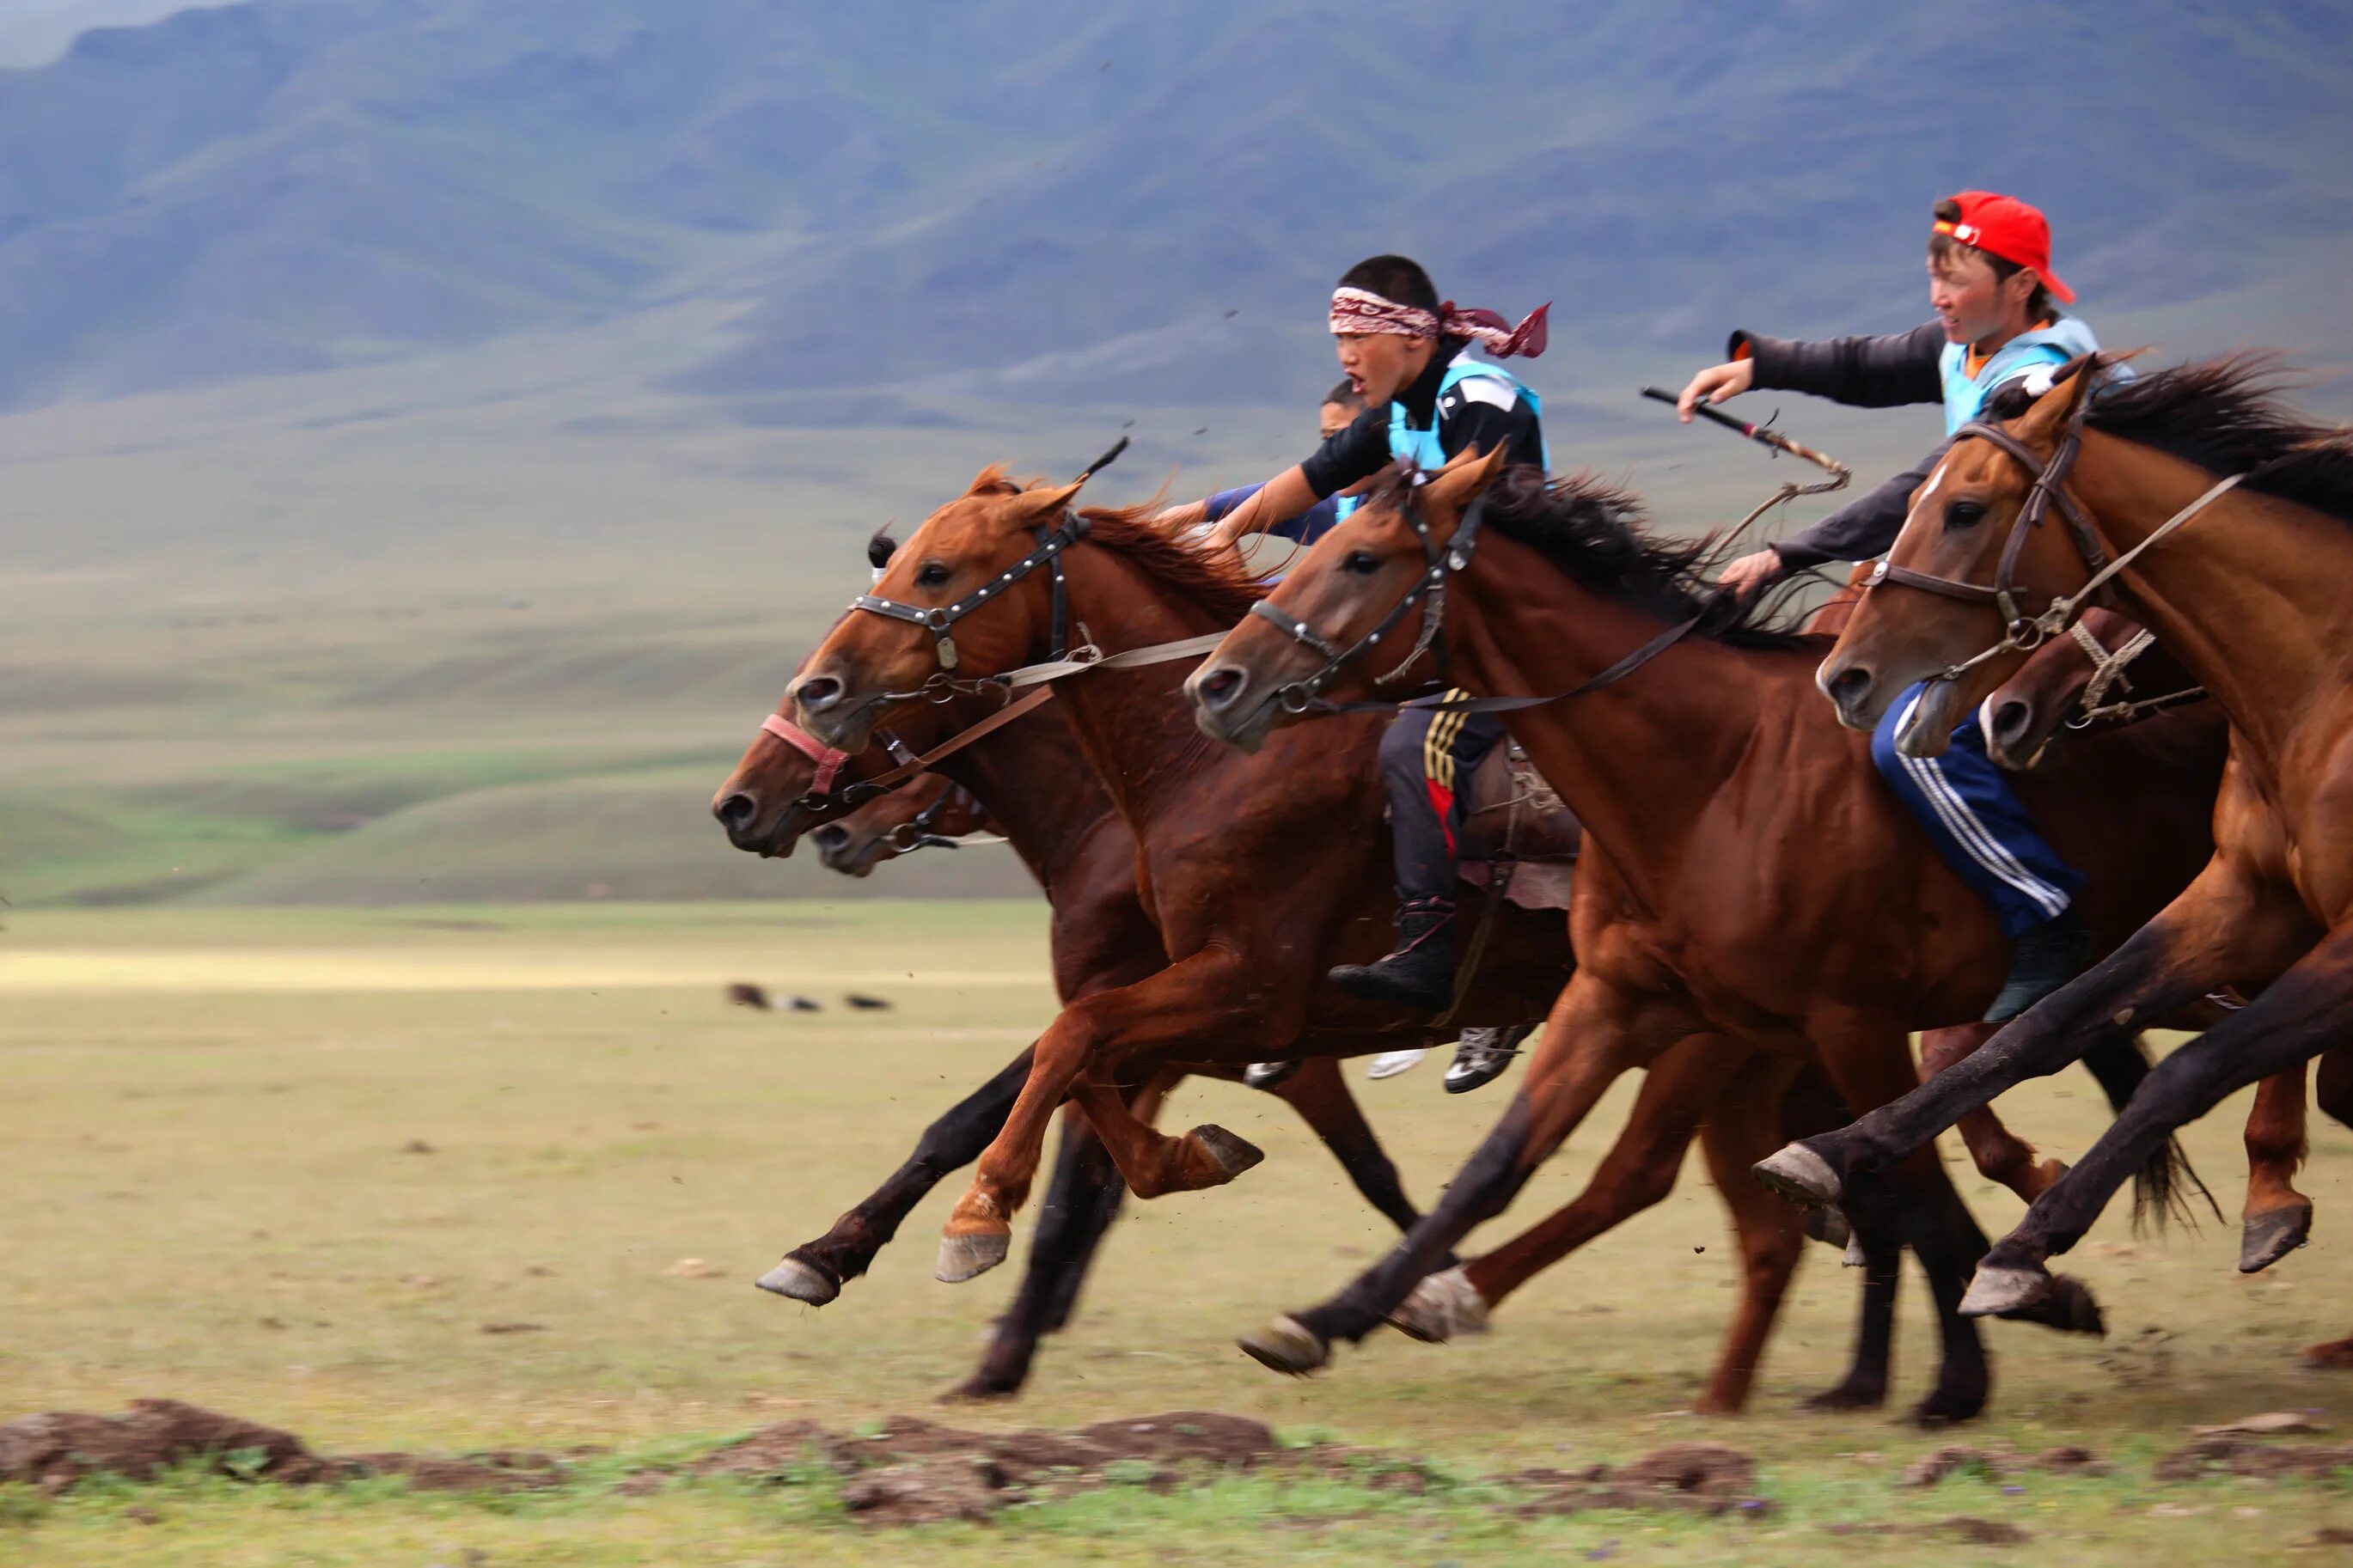 Традиции казахов связанные с лошадьми. Аламан байга скачки. Конный спорт байга. Байга казахи. Аламан байге в Казахстане.